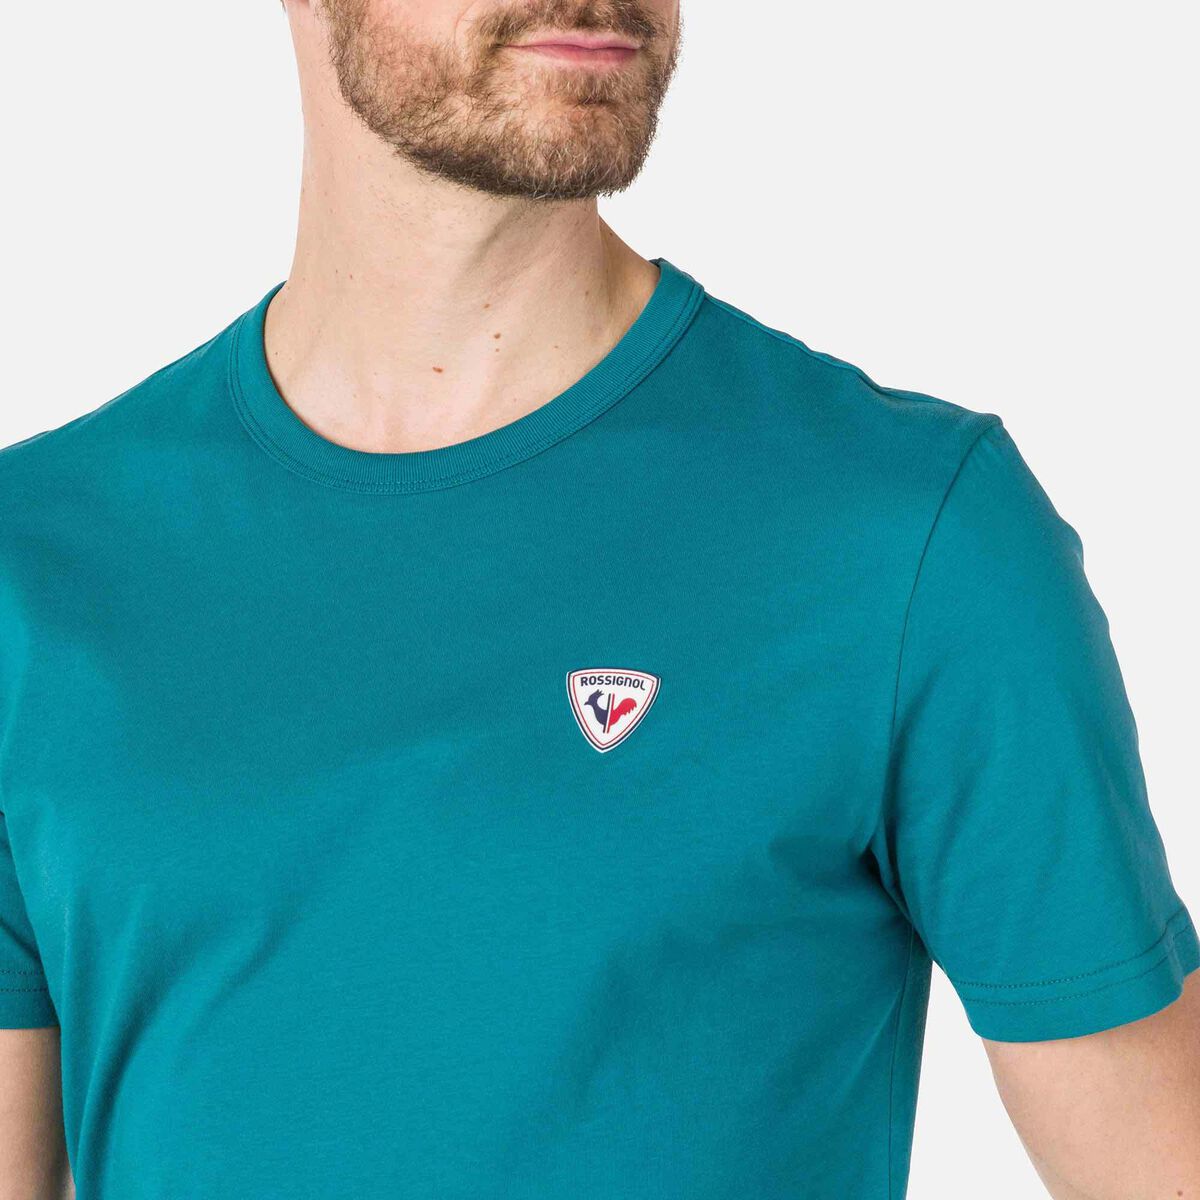 Rossignol Einfarbiges Logo Herren-T-Shirt blue